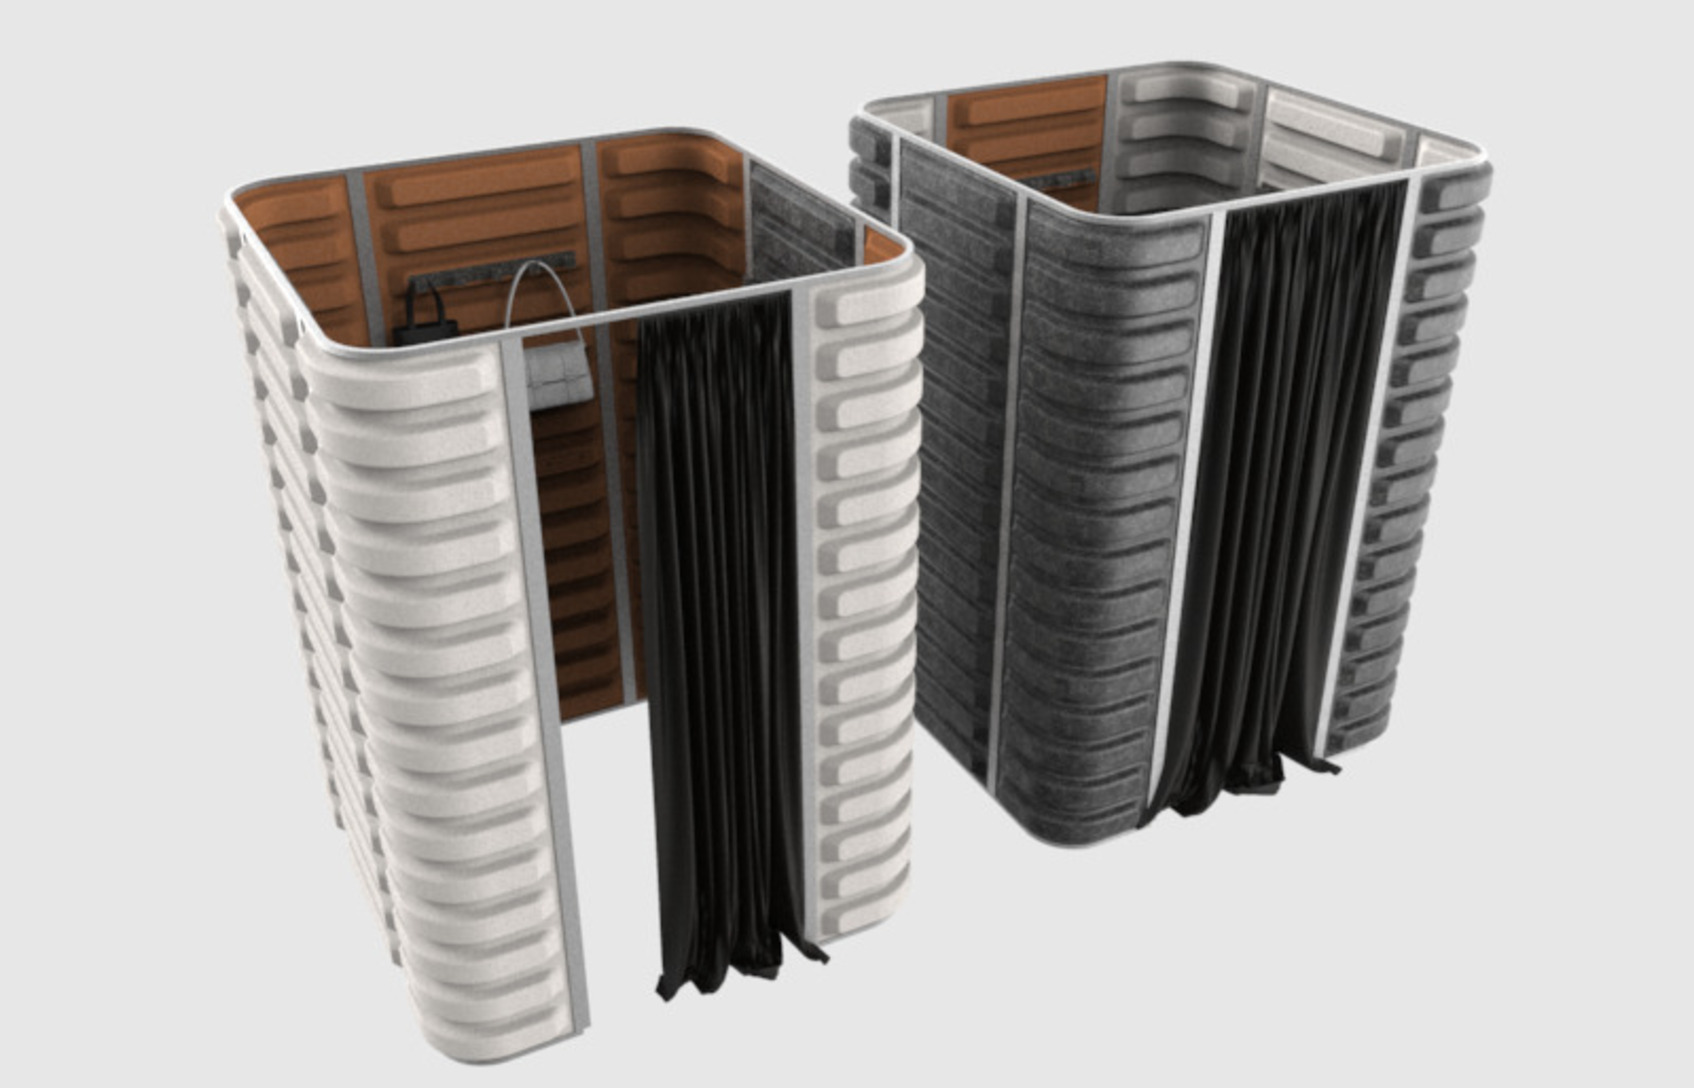 紡織品循環再生 - 模組式辦公空間隔板系統-2